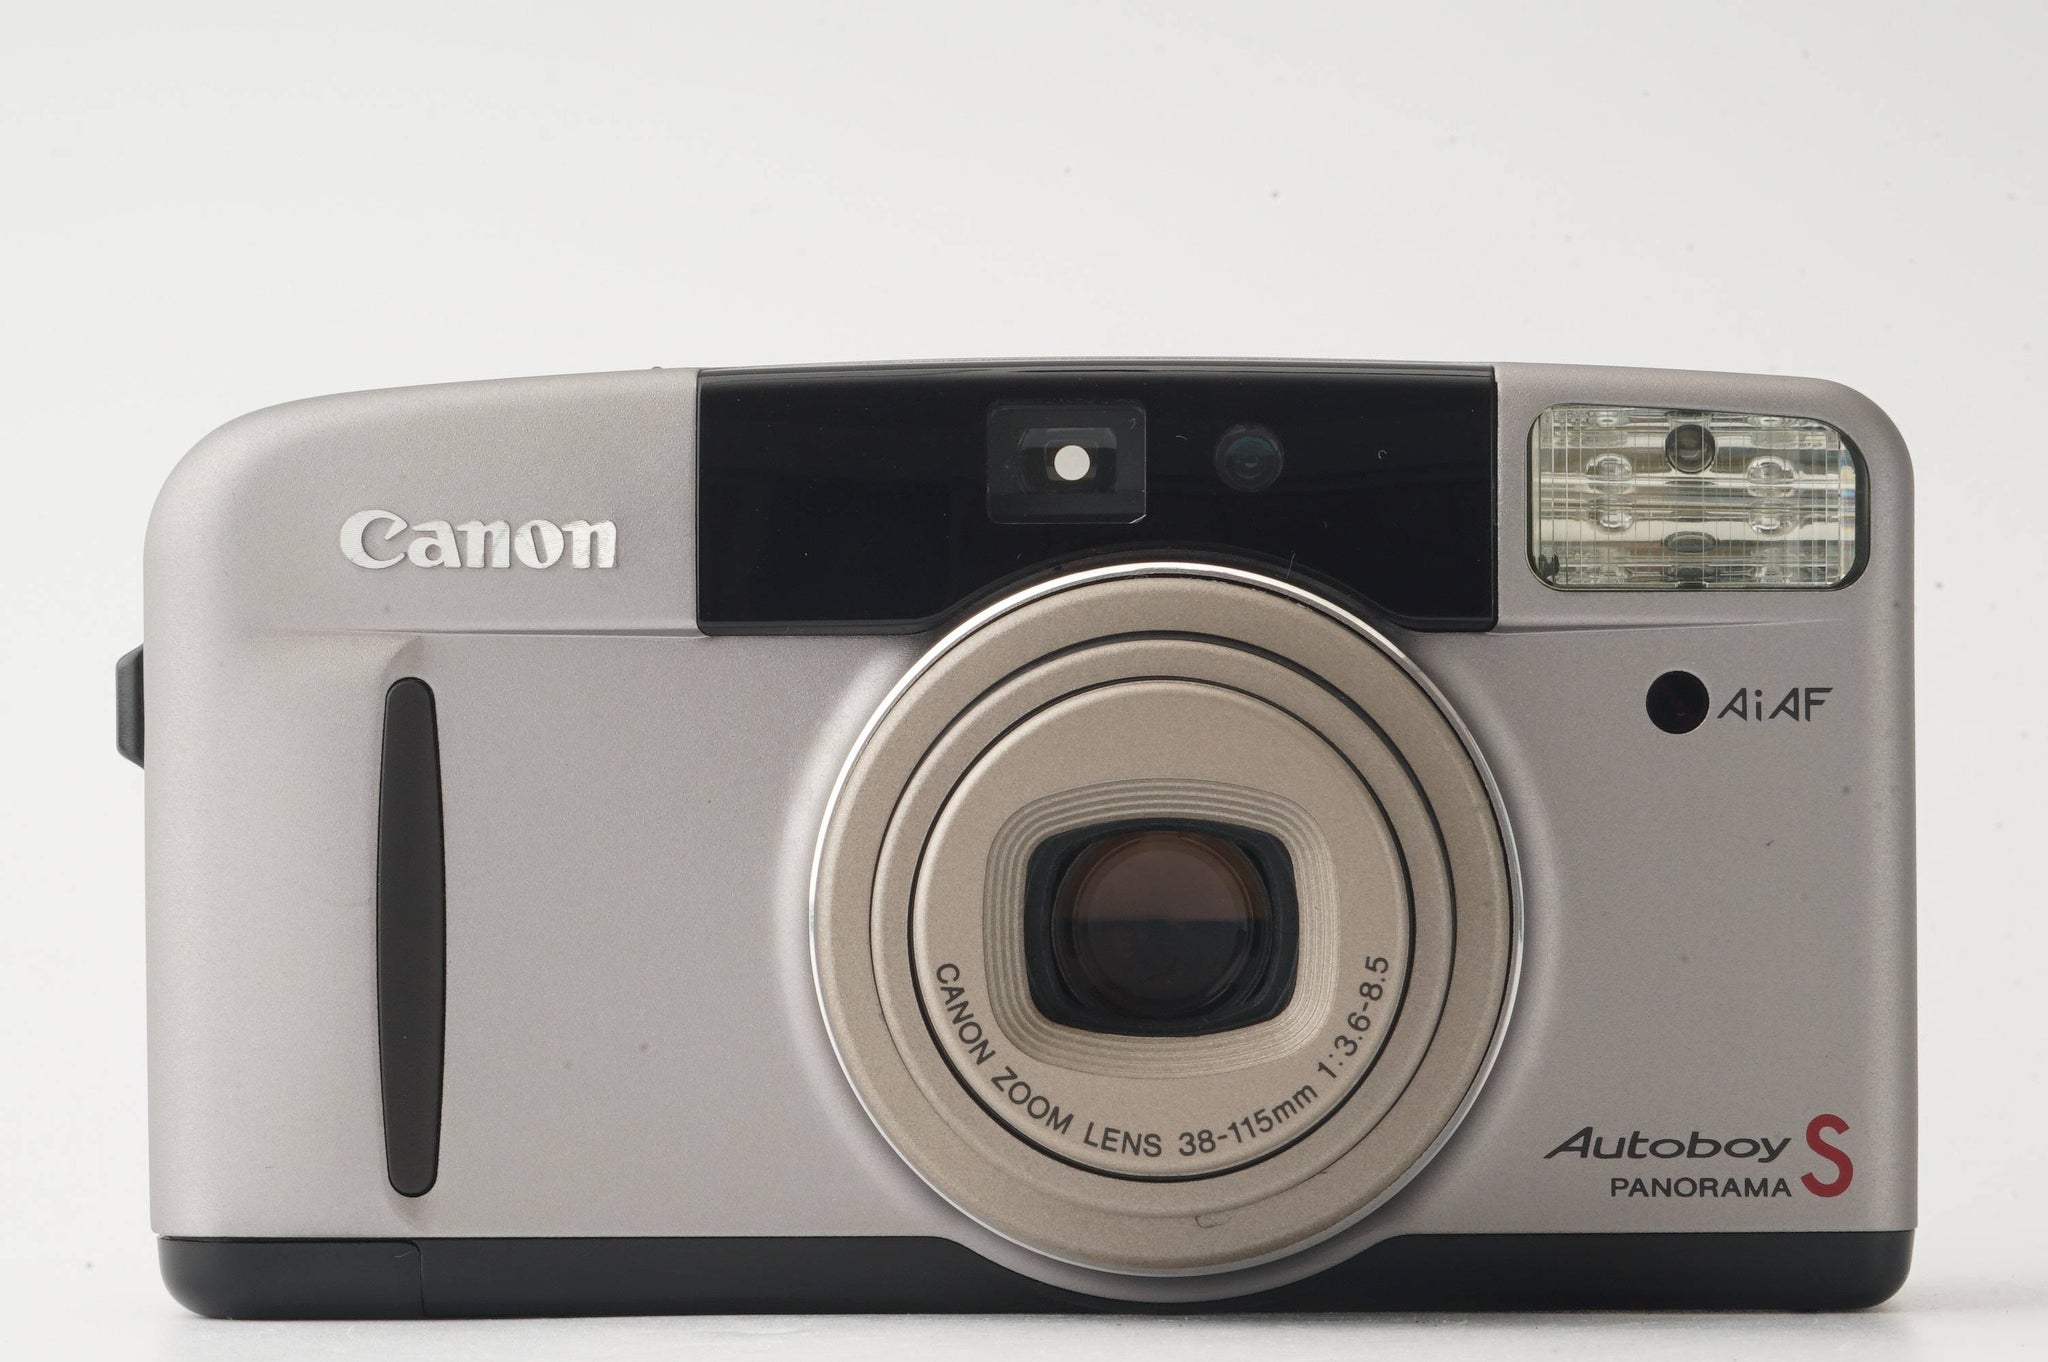 キヤノン Canon Autoboy S PANORAMA / ZOOM 38-115mm F3.6-8.5 ...